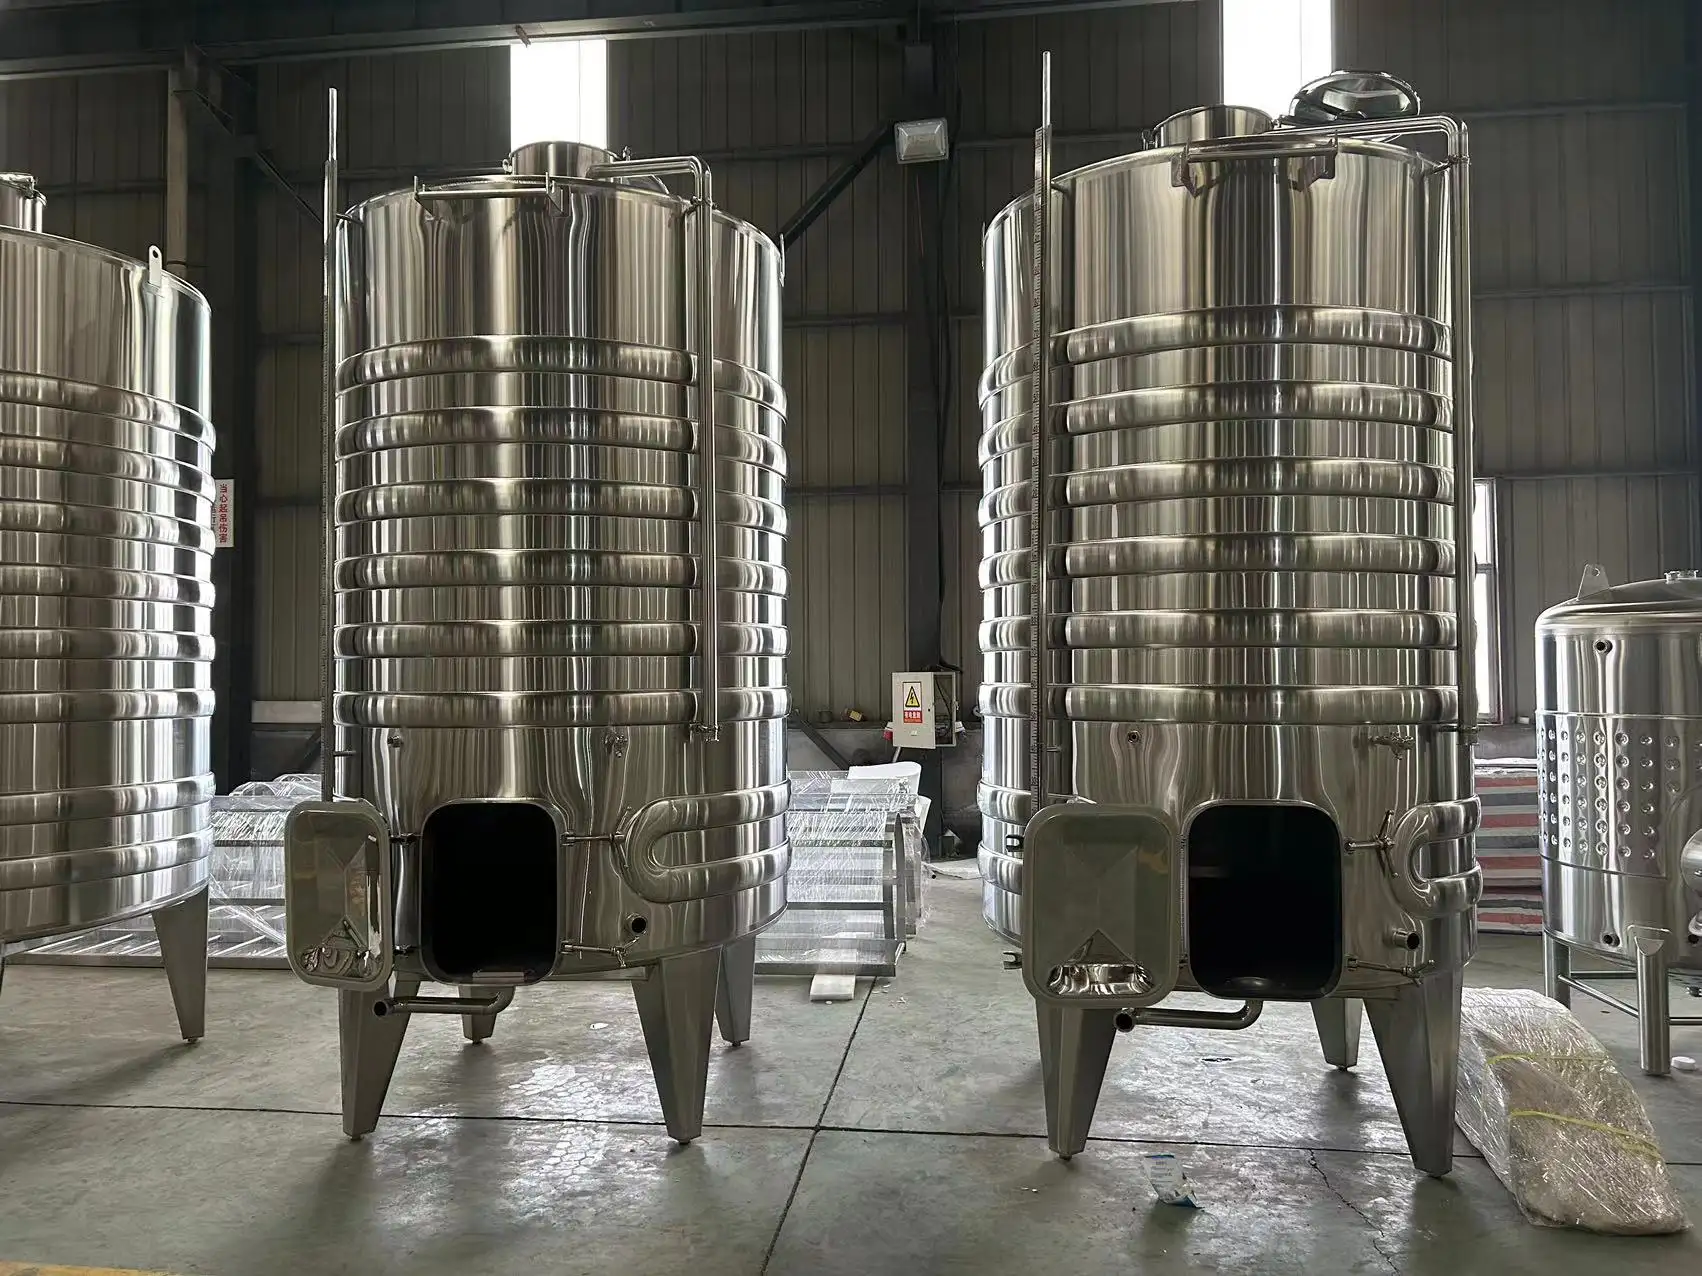 スパイラル冷却コイル発酵装置を備えたステンレス鋼5000Lワイン発酵タンク